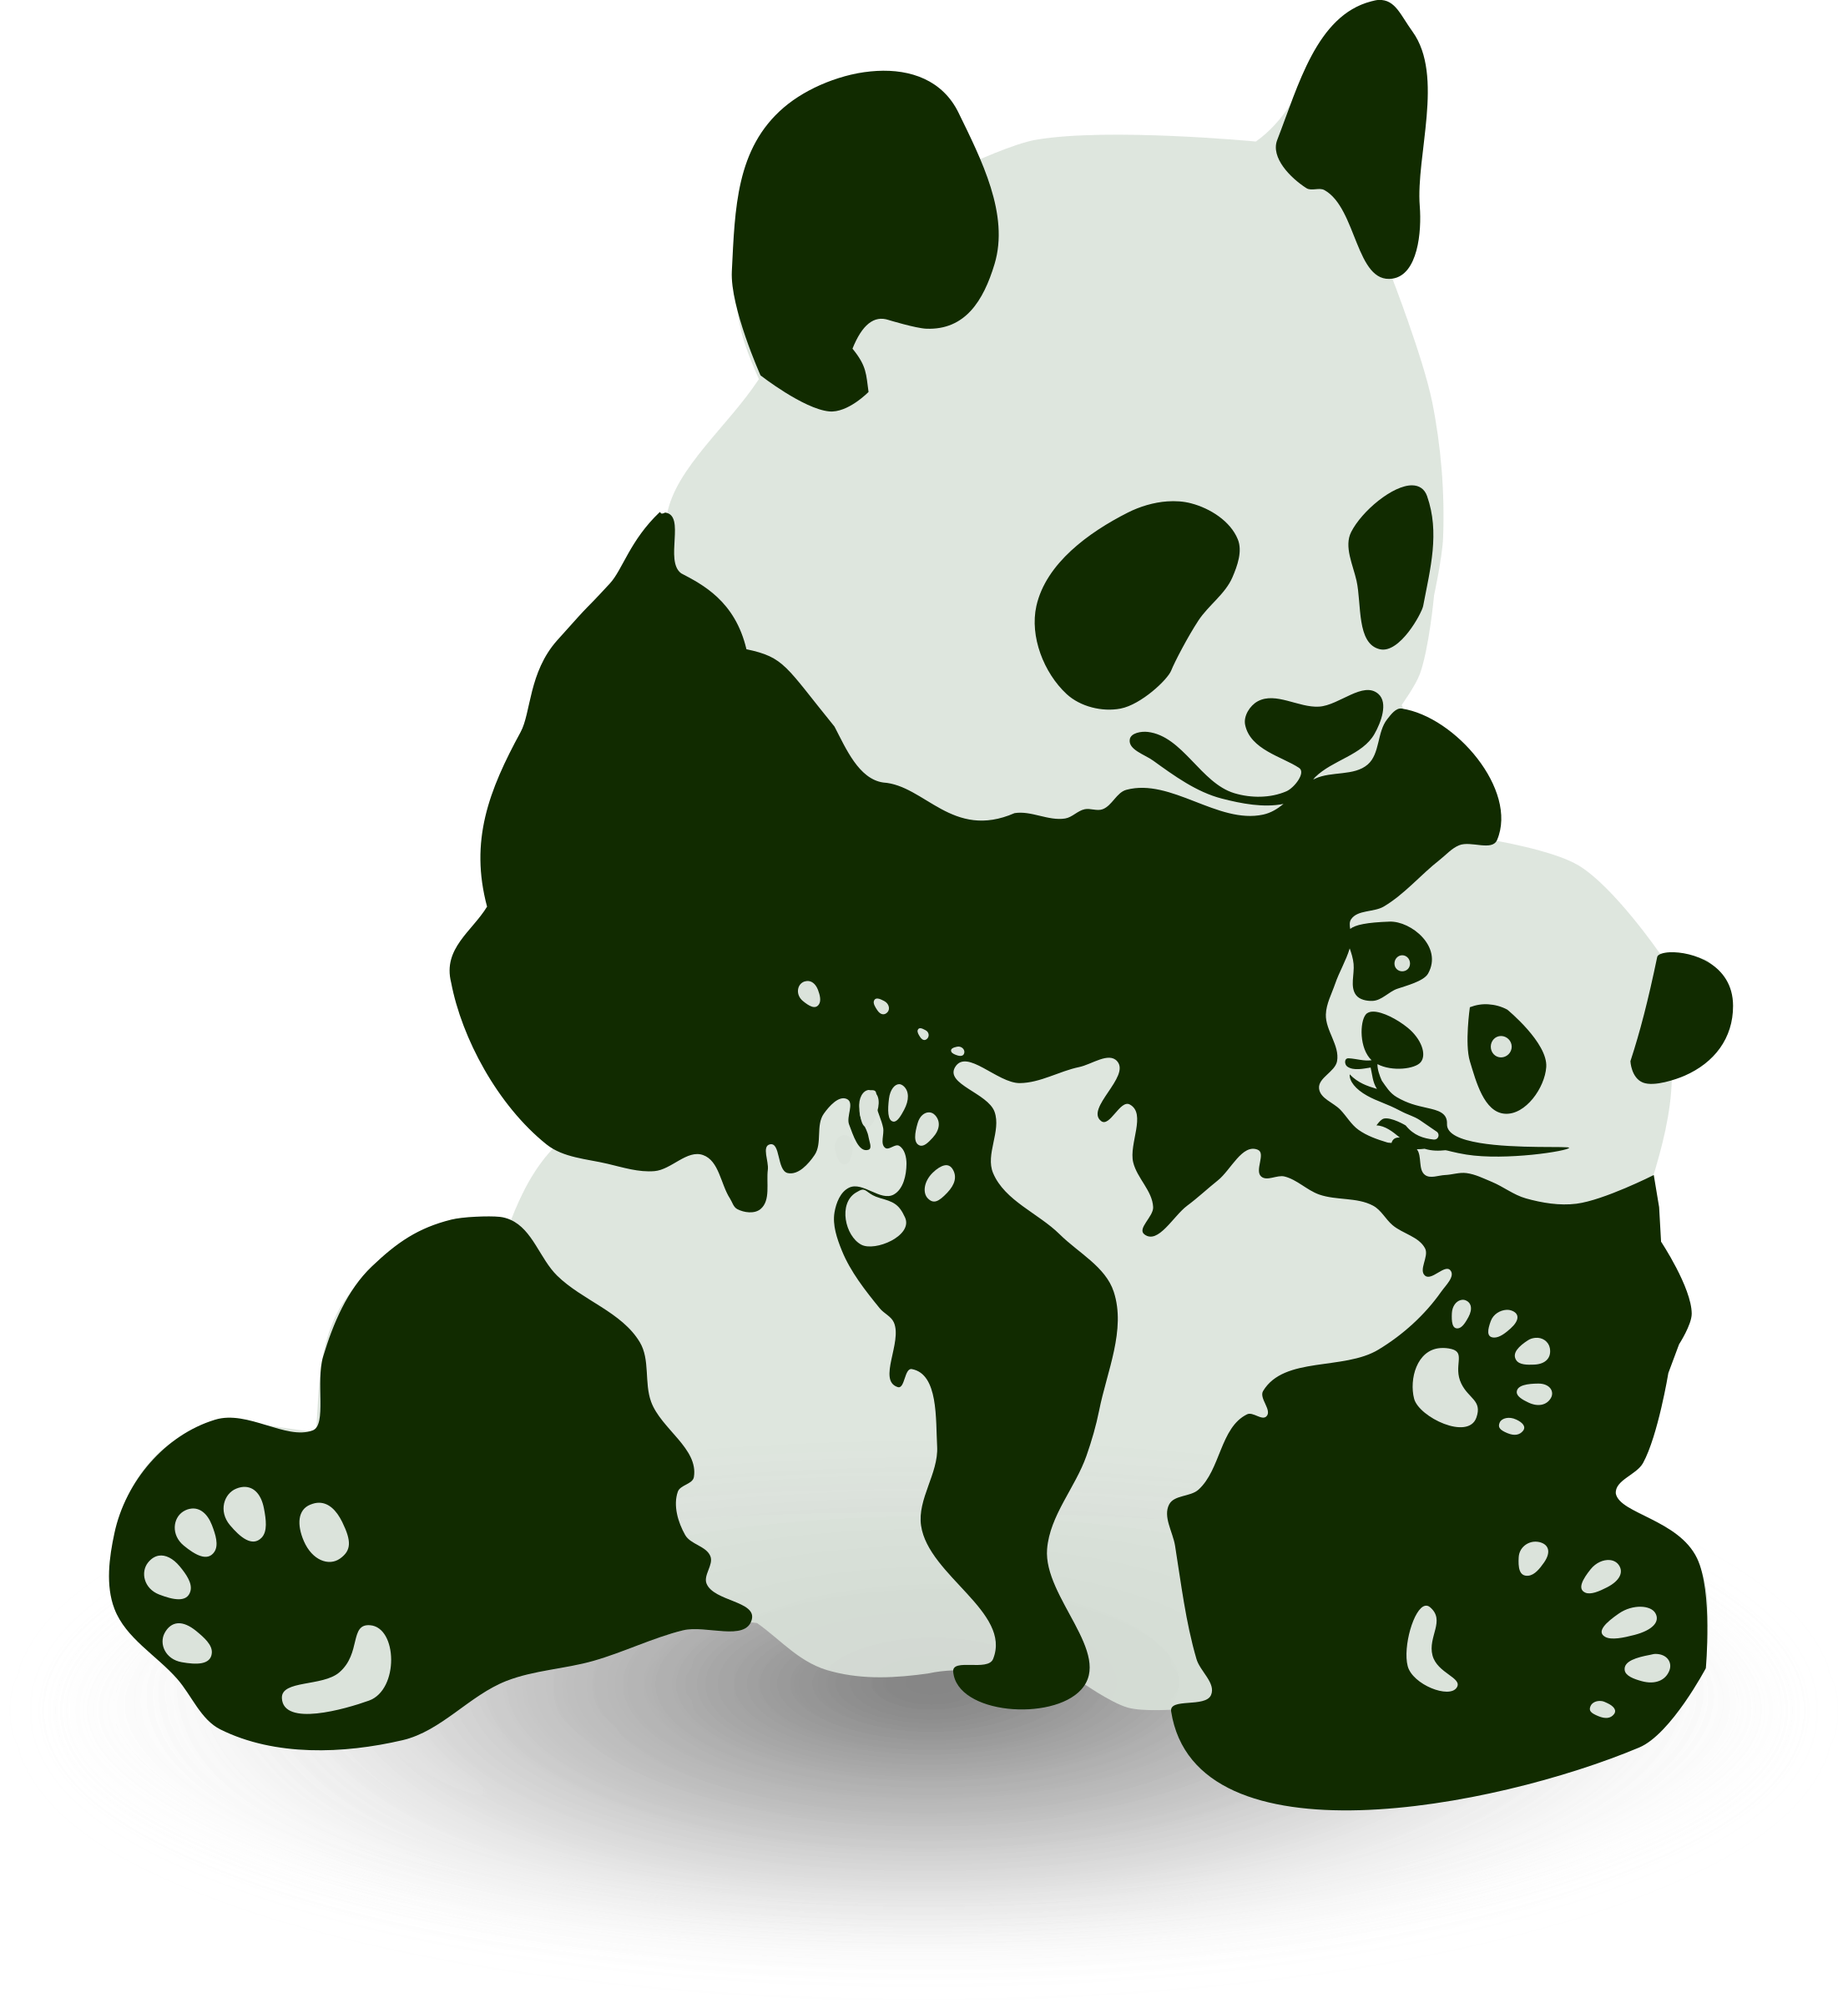 Panda & Baby Panda Clip arts